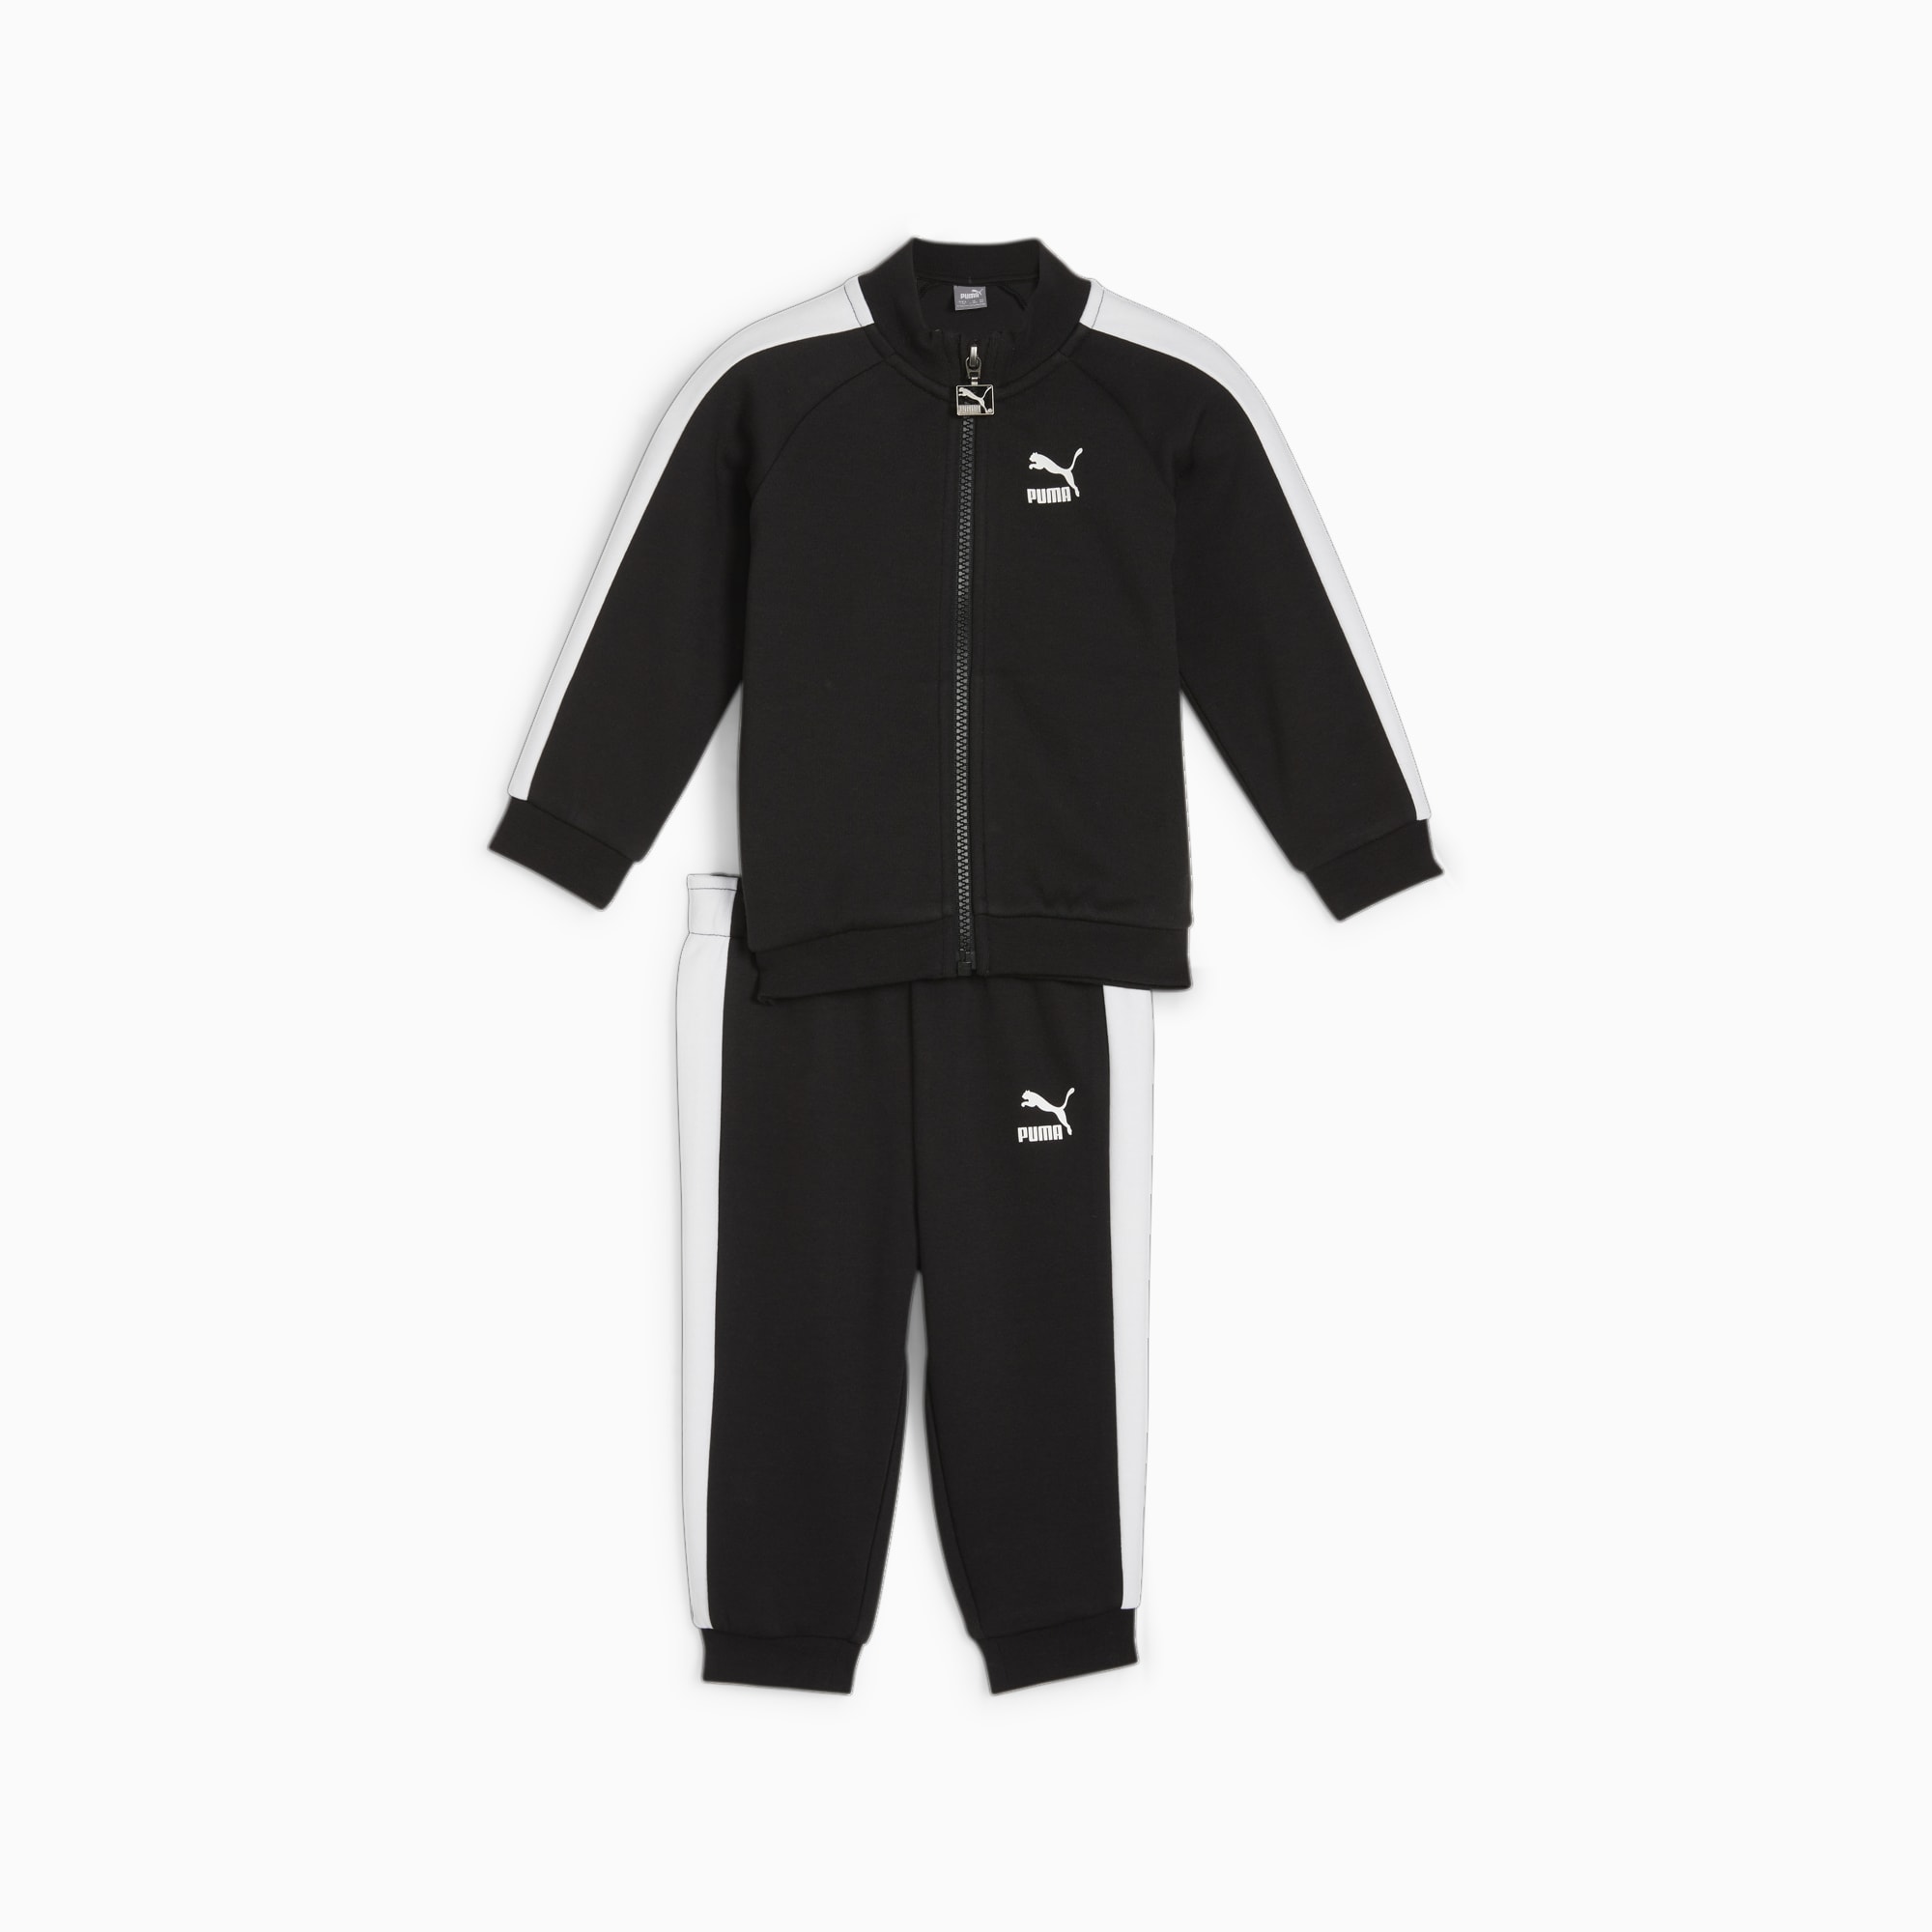 PUMA MINICATS T7 ICONIC Trainingsanzug Baby Für Kinder, Schwarz, Größe: 68, Kleidung